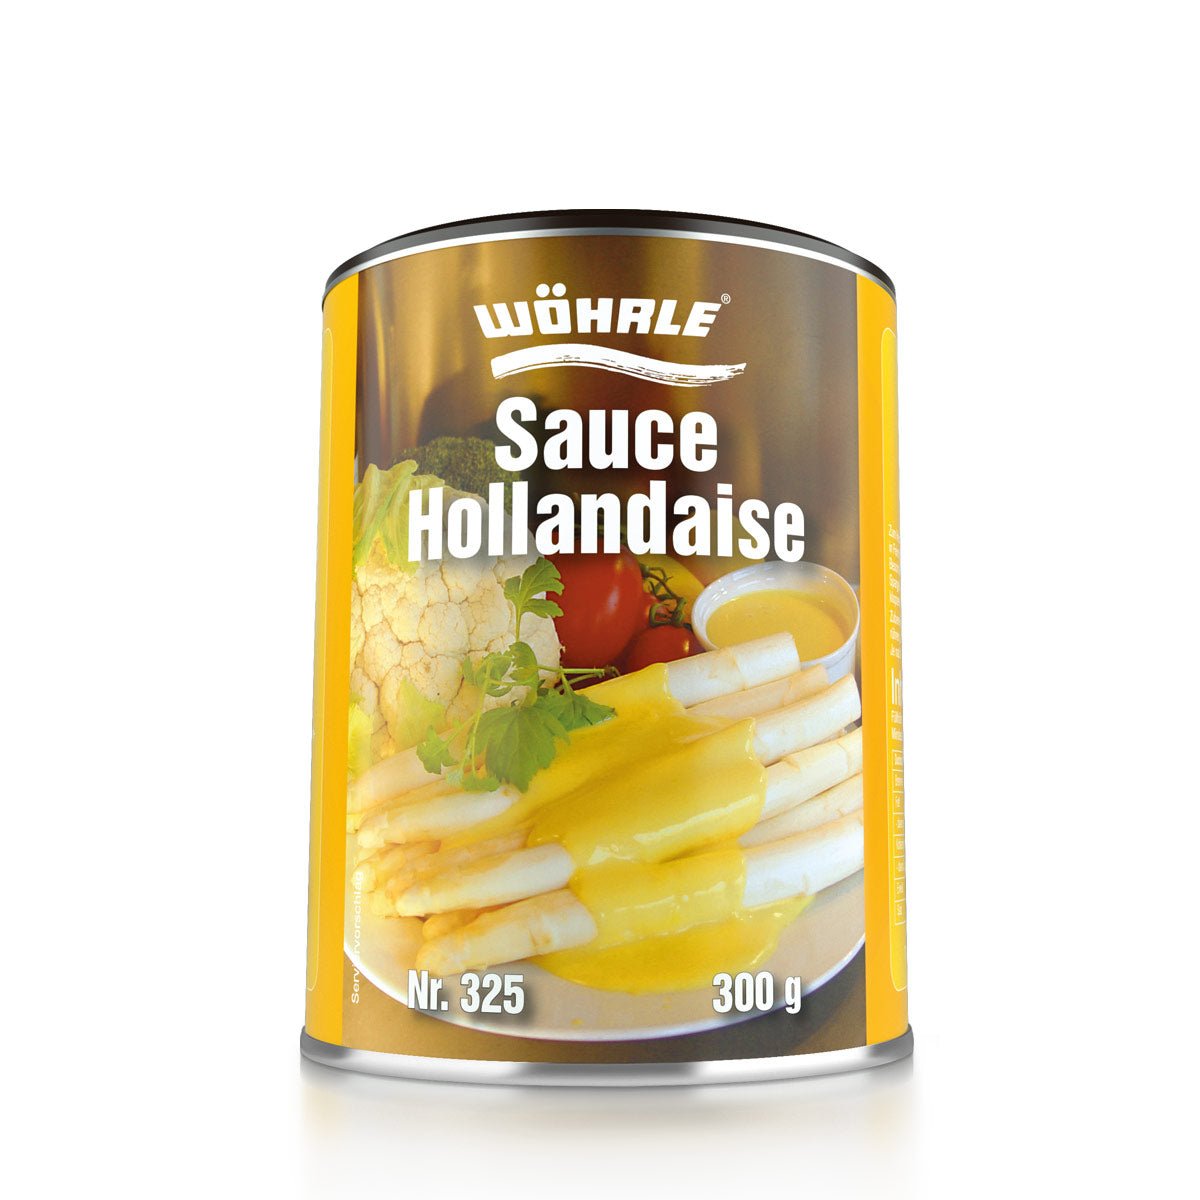 Sauce Hollandaise - Wöhrle - S' Beschde für dahoim!